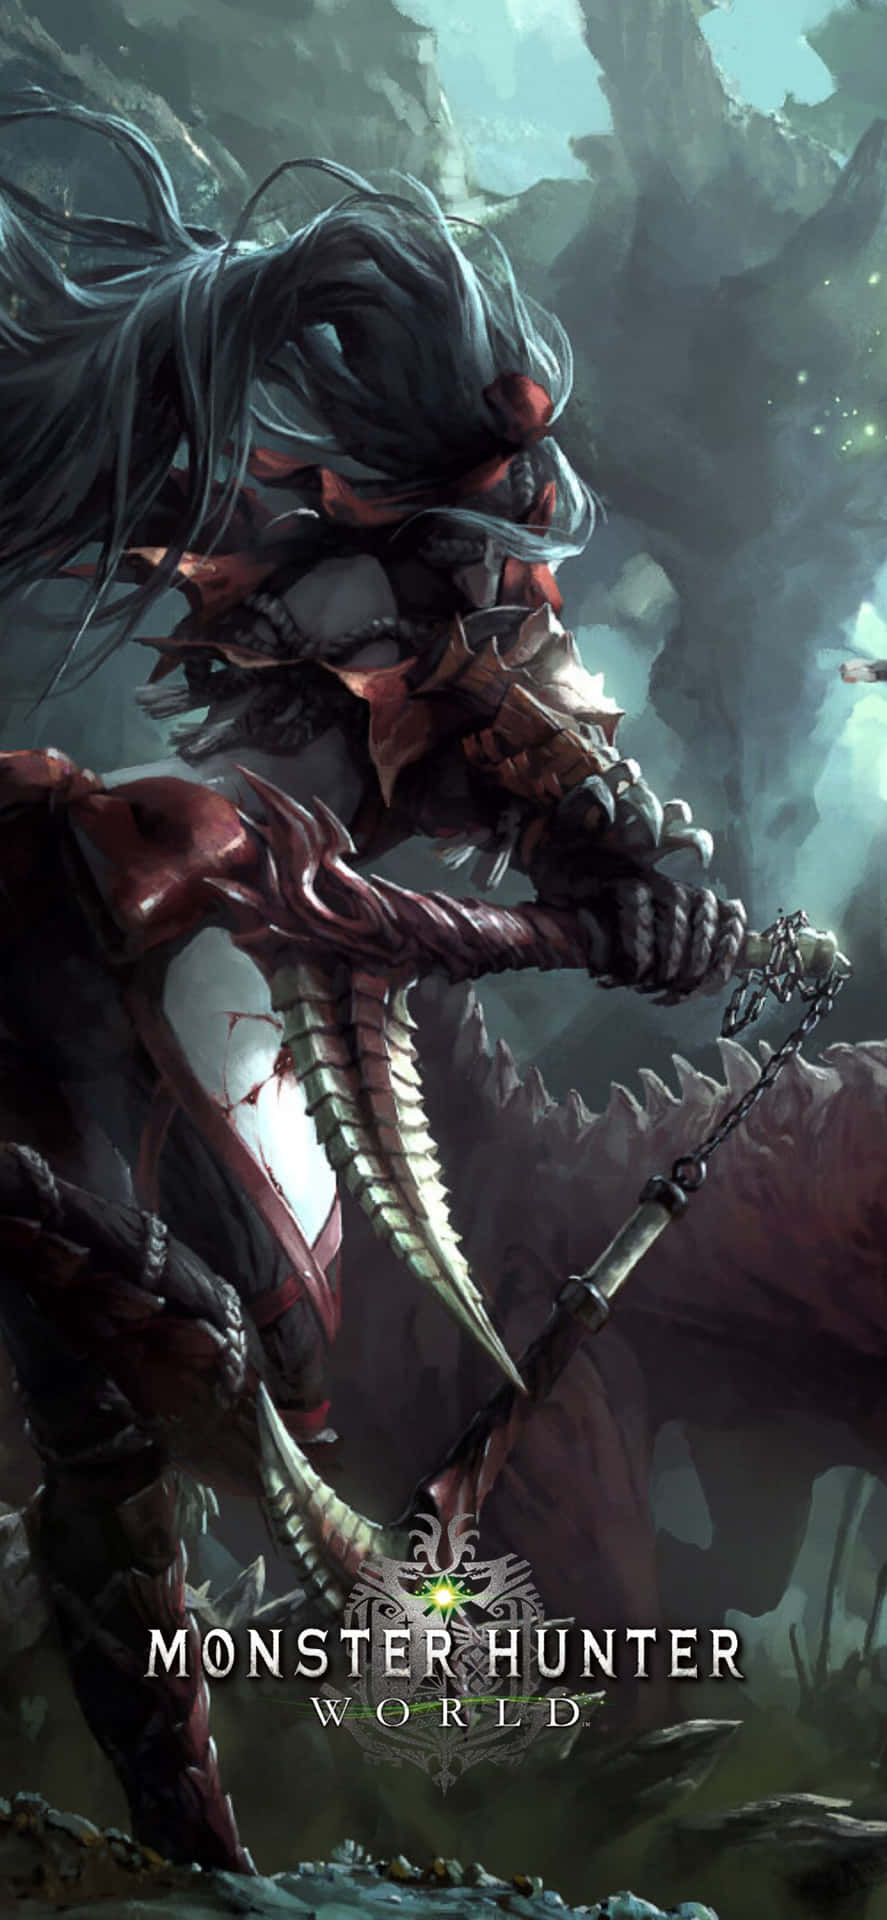 Iphonexs Max Bakgrund Med Odogaron Från Monster Hunter World.